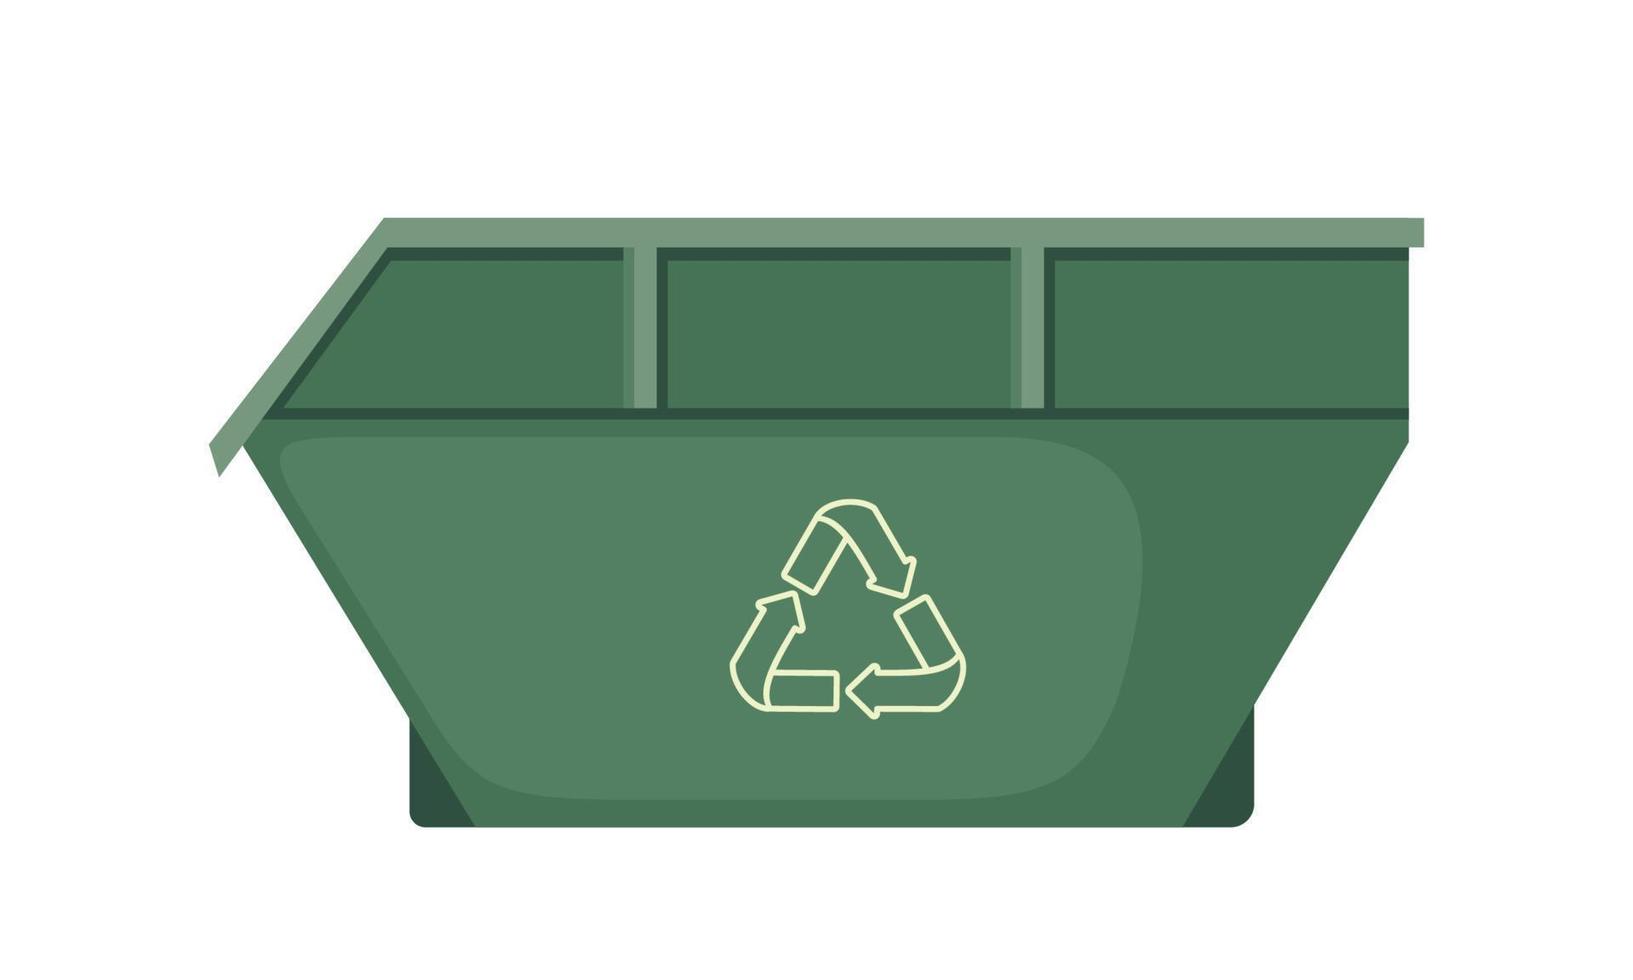 Papierkorb-Container-Symbol mit Recycling-Symbol im flachen Stil isoliert auf weißem Hintergrund. Vektor-Illustration. vektor